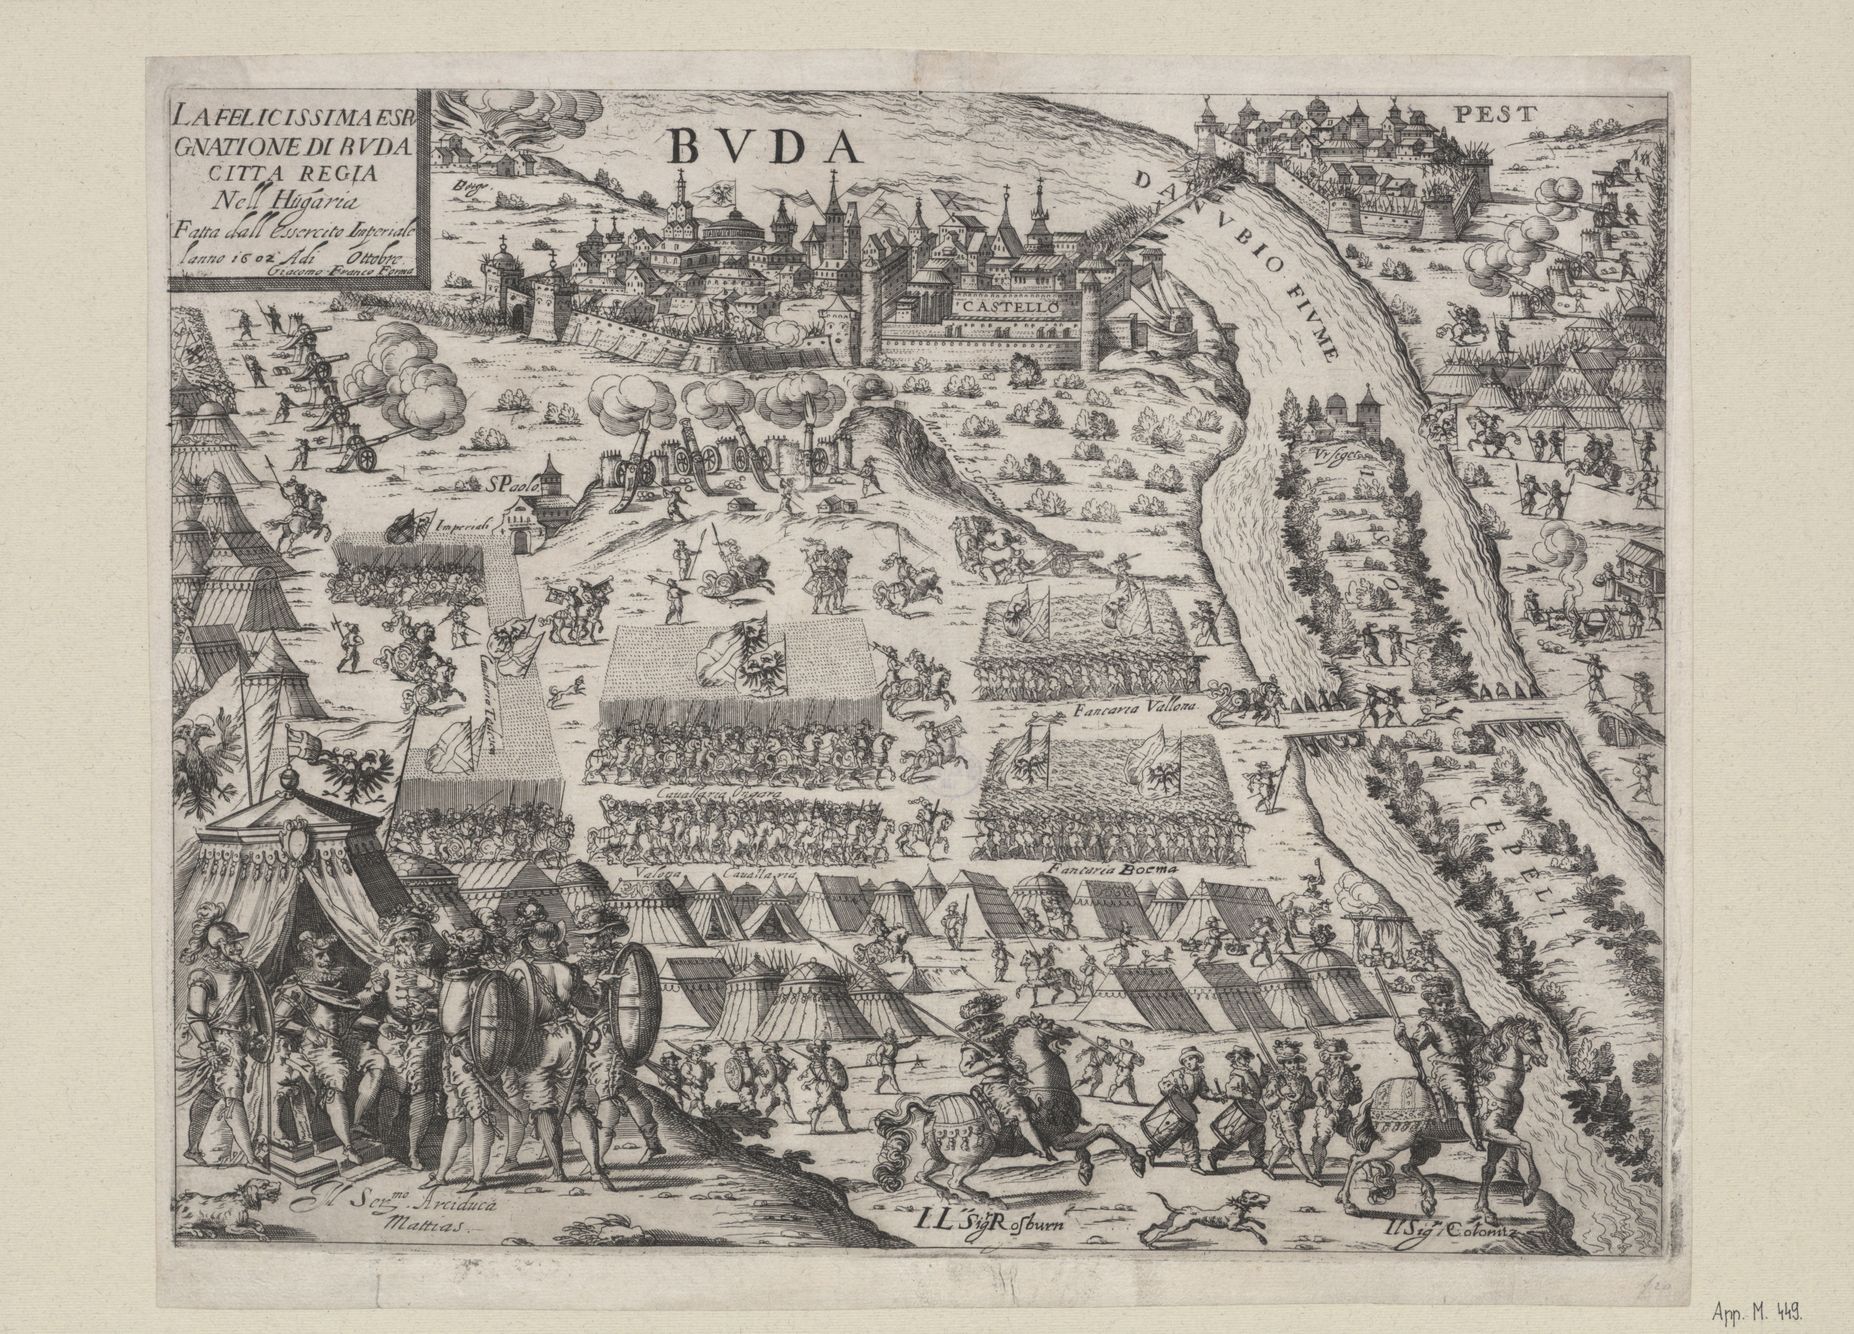 Giacomo Franco: Buda ostroma. Rézmetszet és rézkarc, 1602 után, részlet. (OSZK App. M. 449)